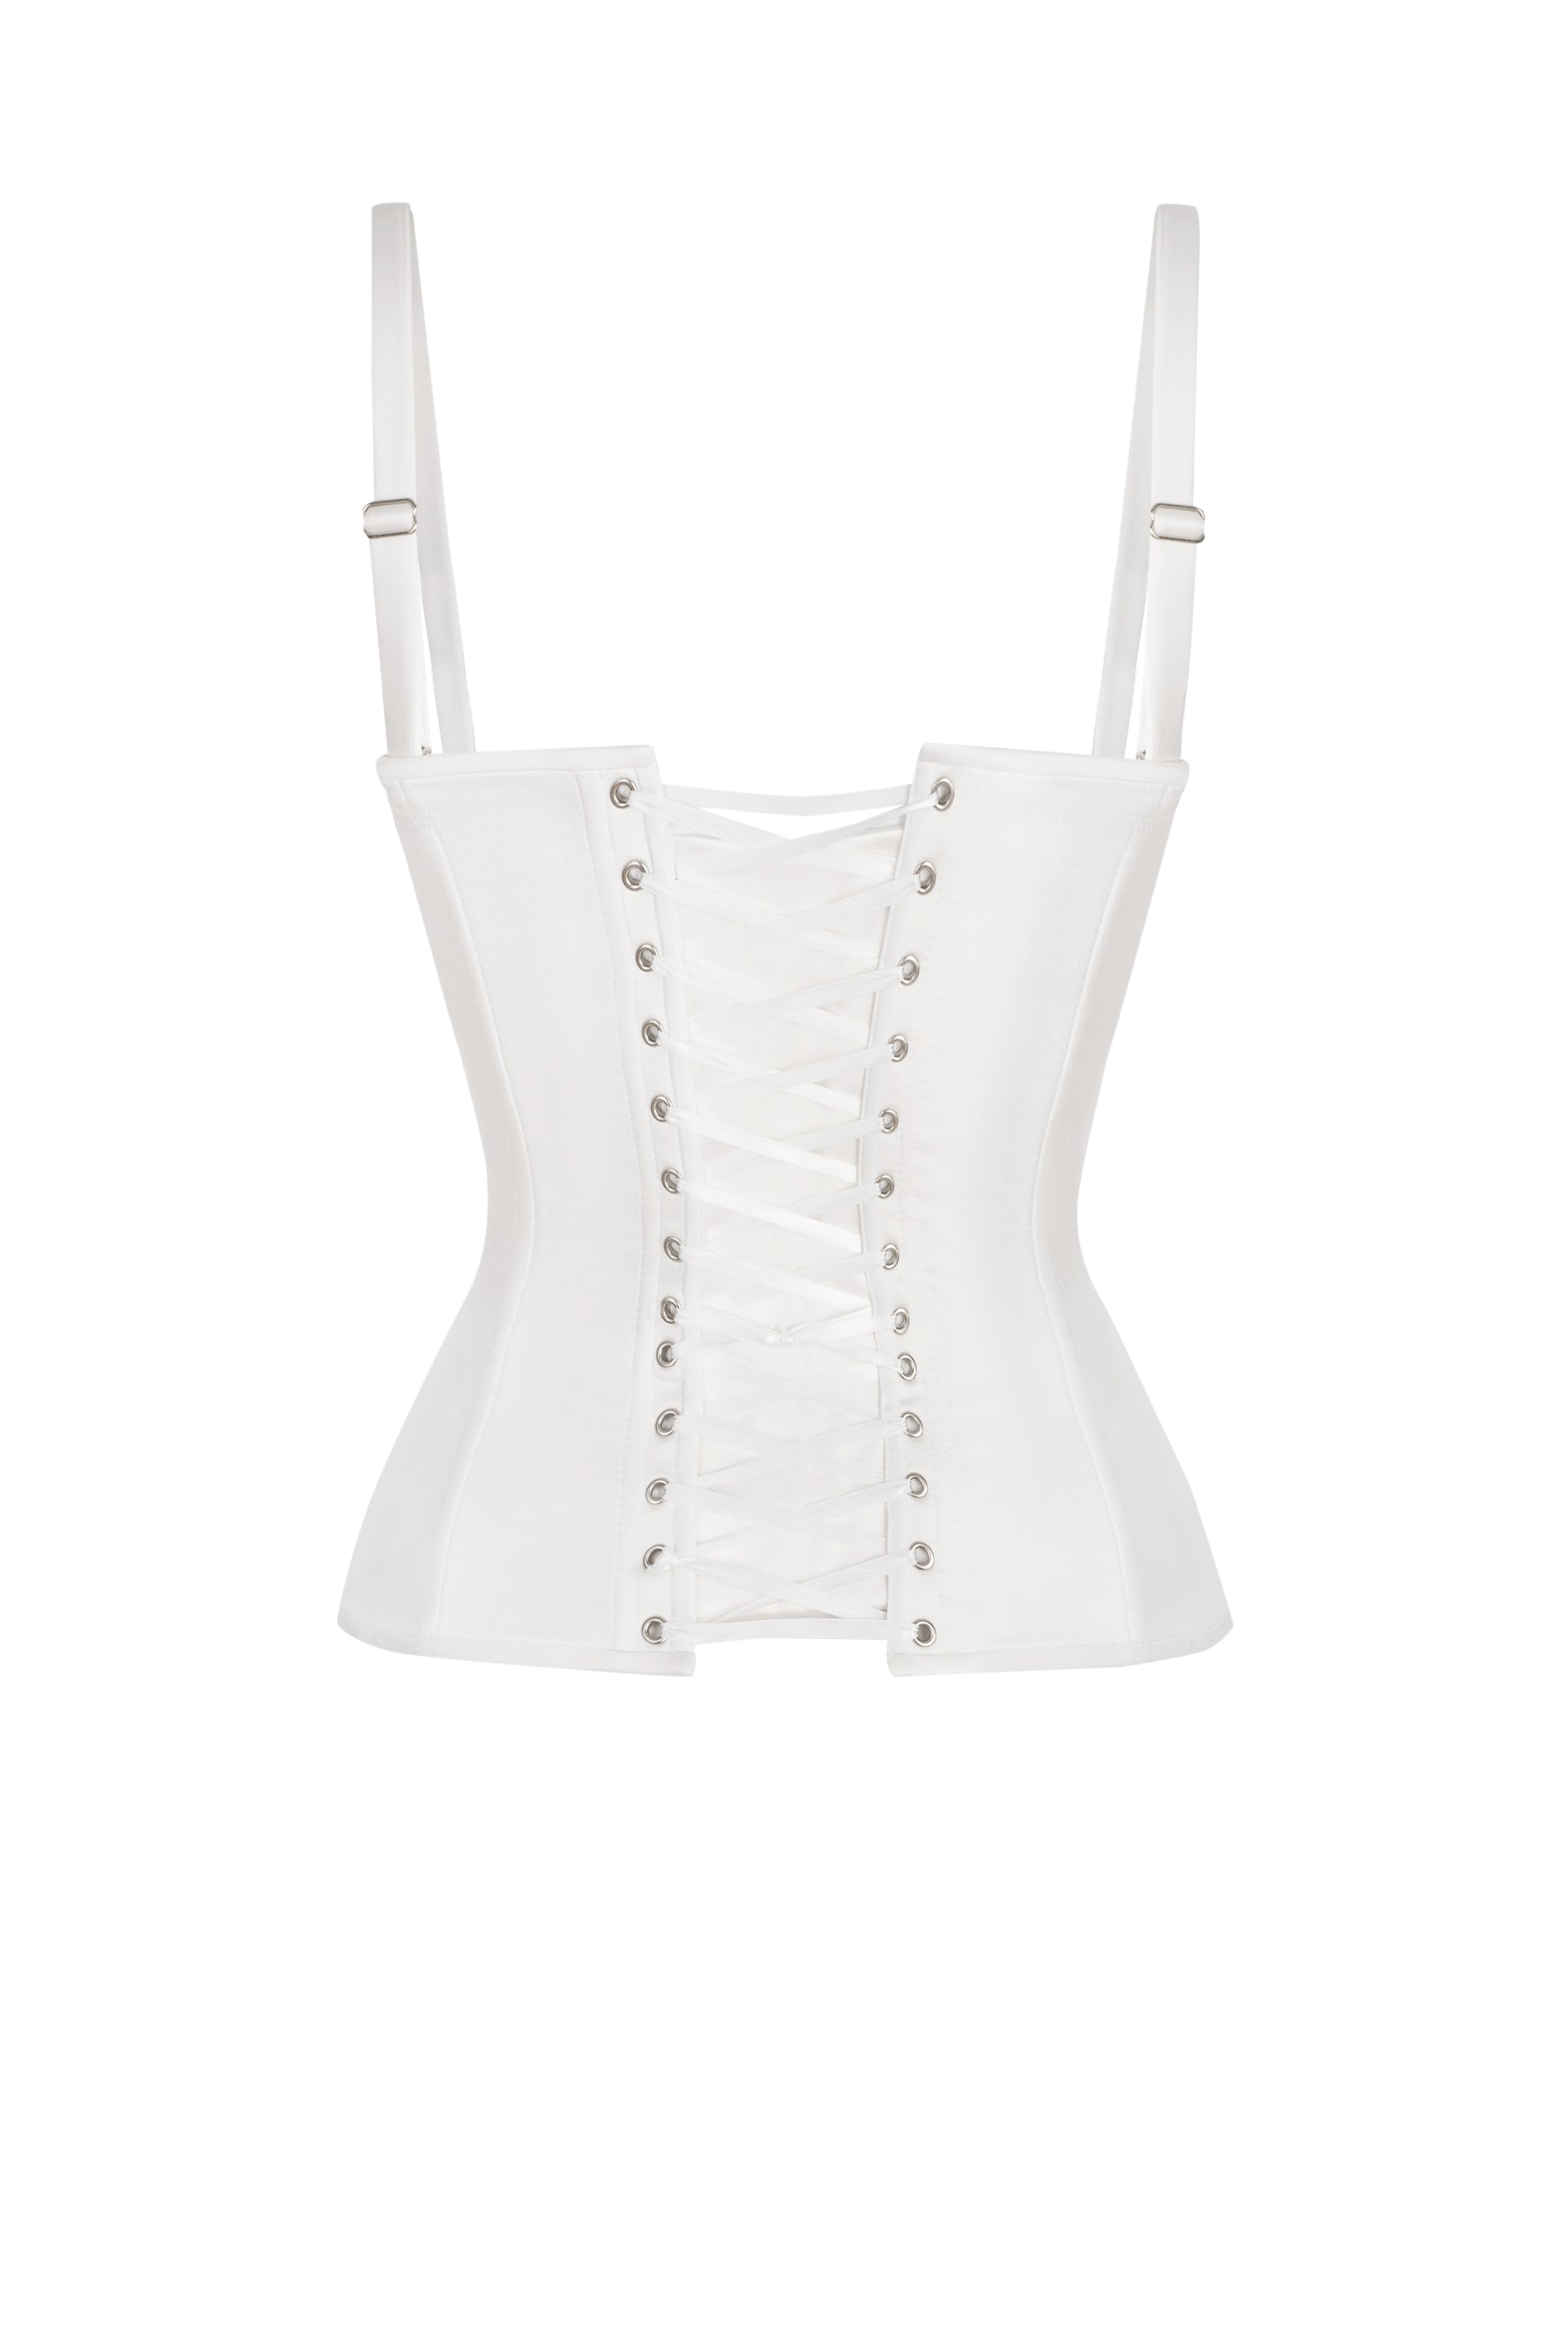 Off white short satin corset - STATNAIA